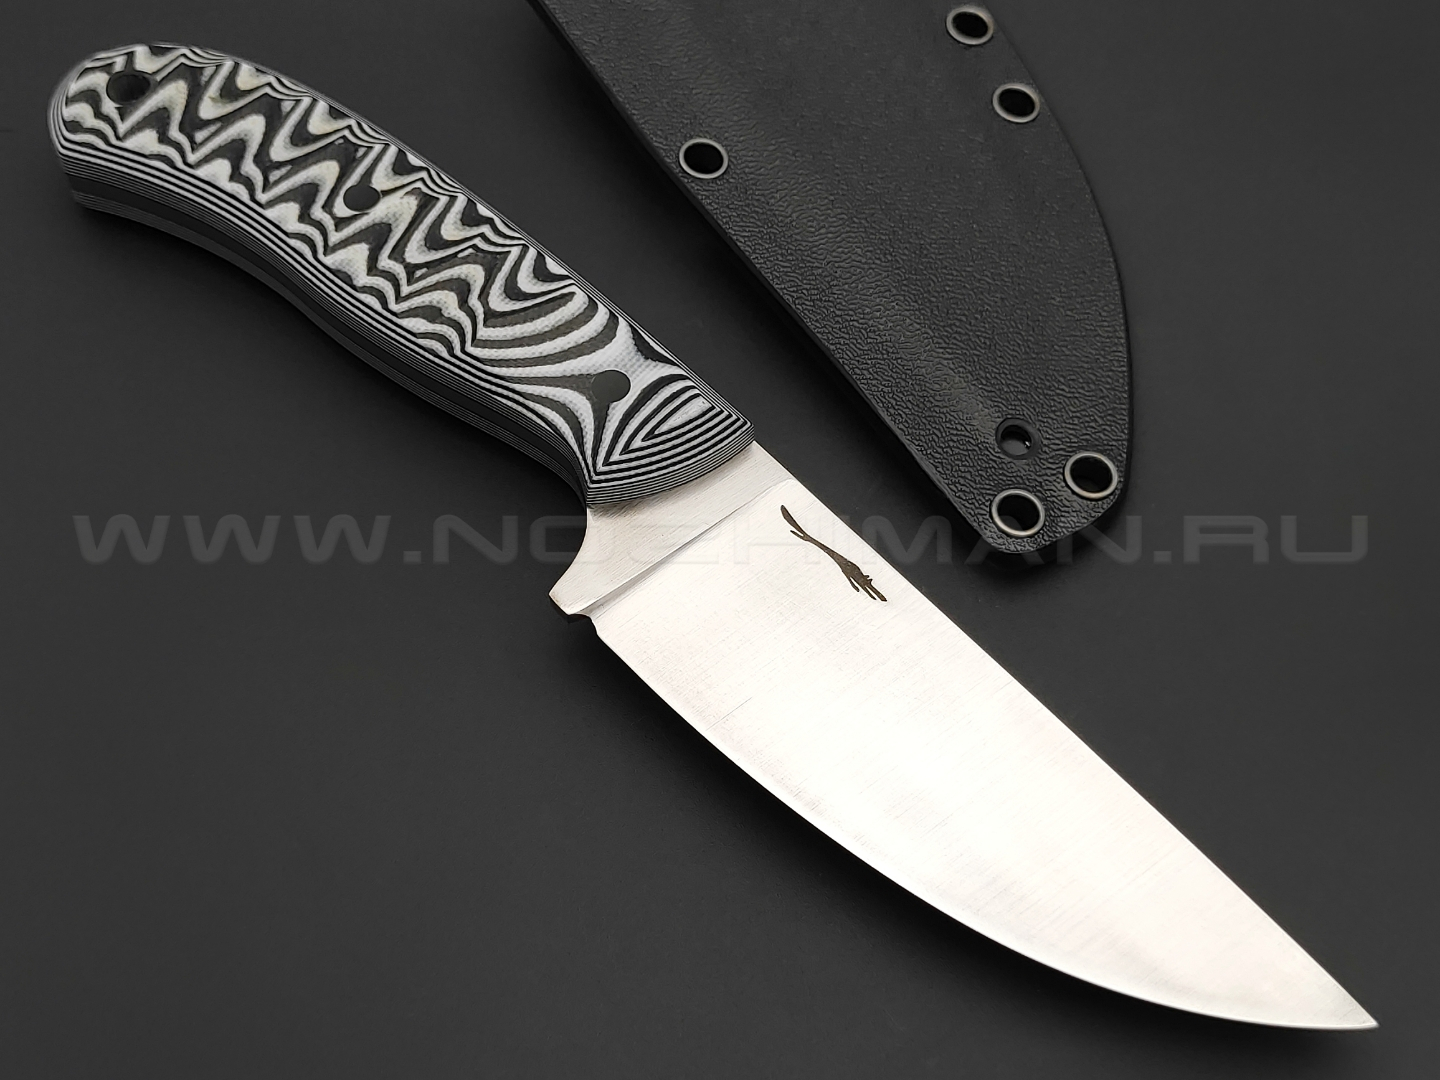 Волчий Век нож Mark-I сталь Niolox WA, рукоять черно-белая G10